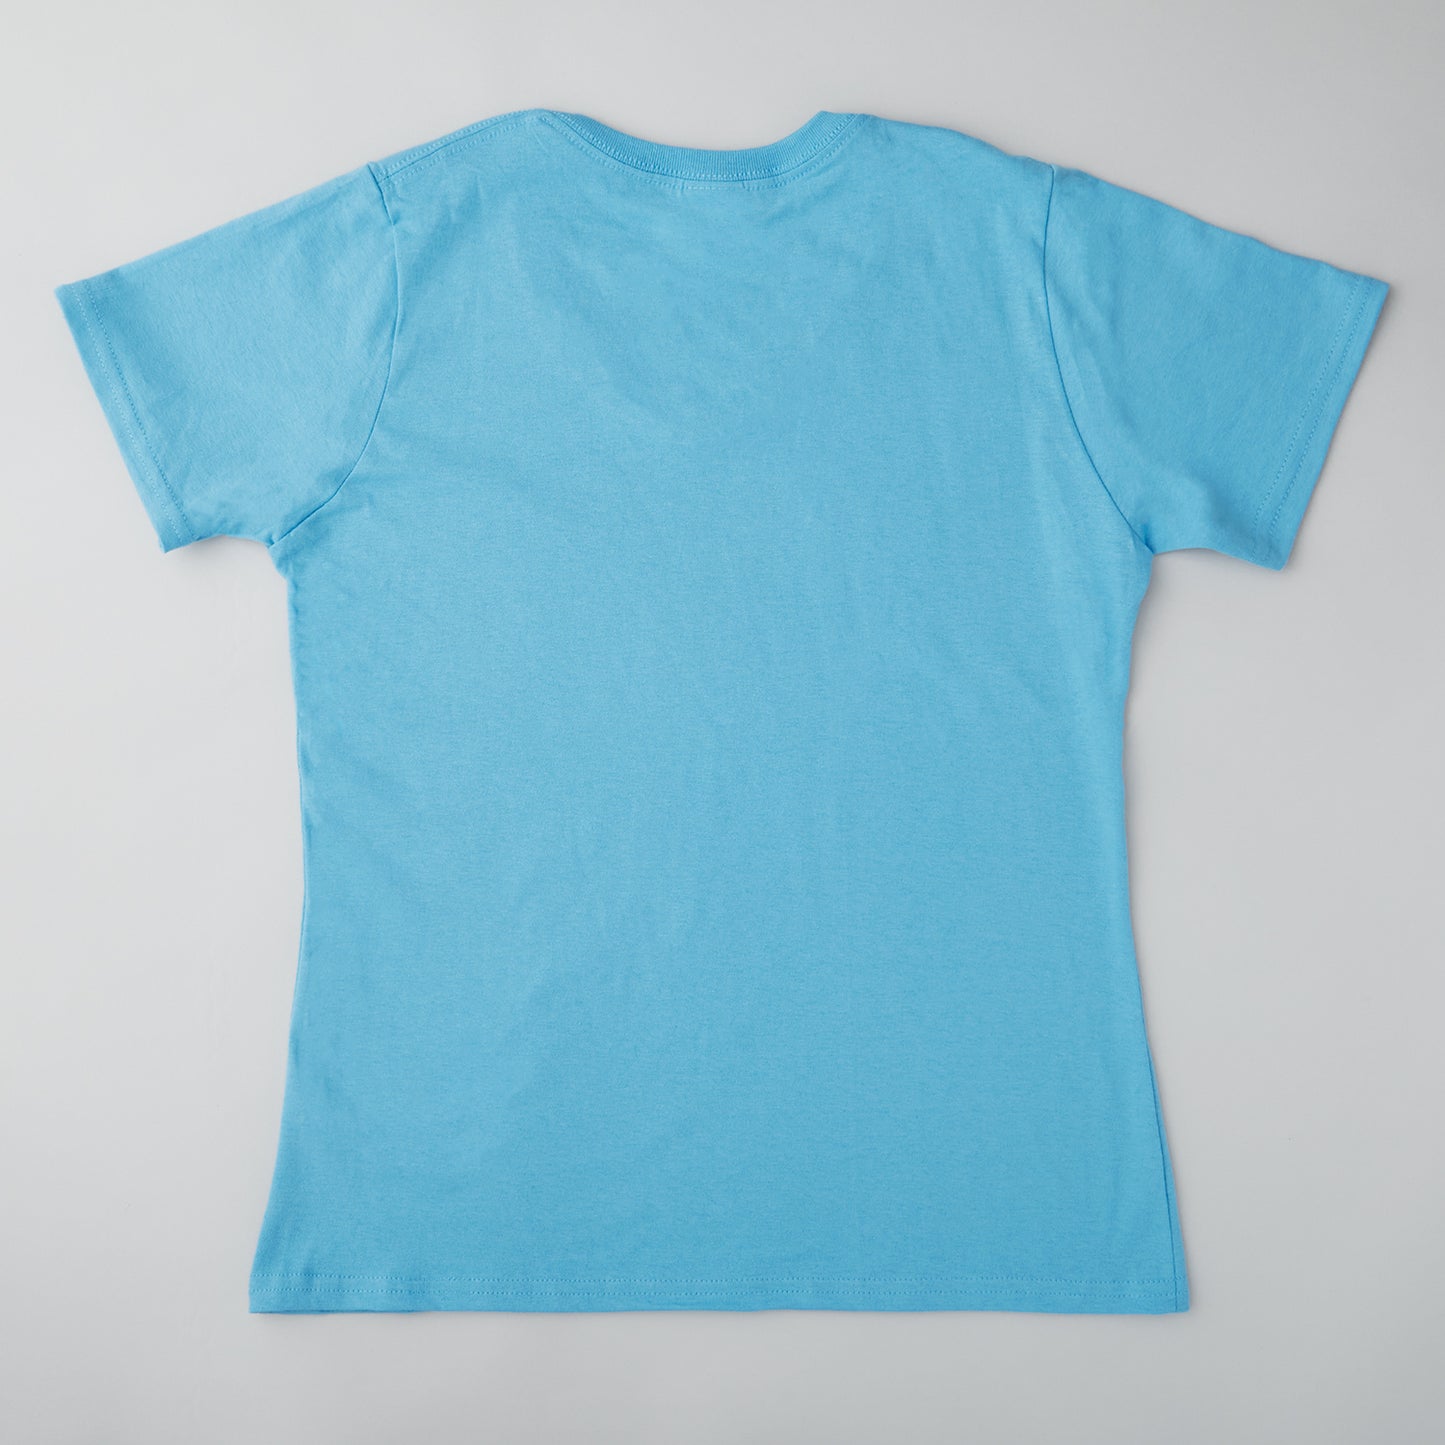 Quiltmaker T-shirt - Aquatic Blue L Alternative View #1